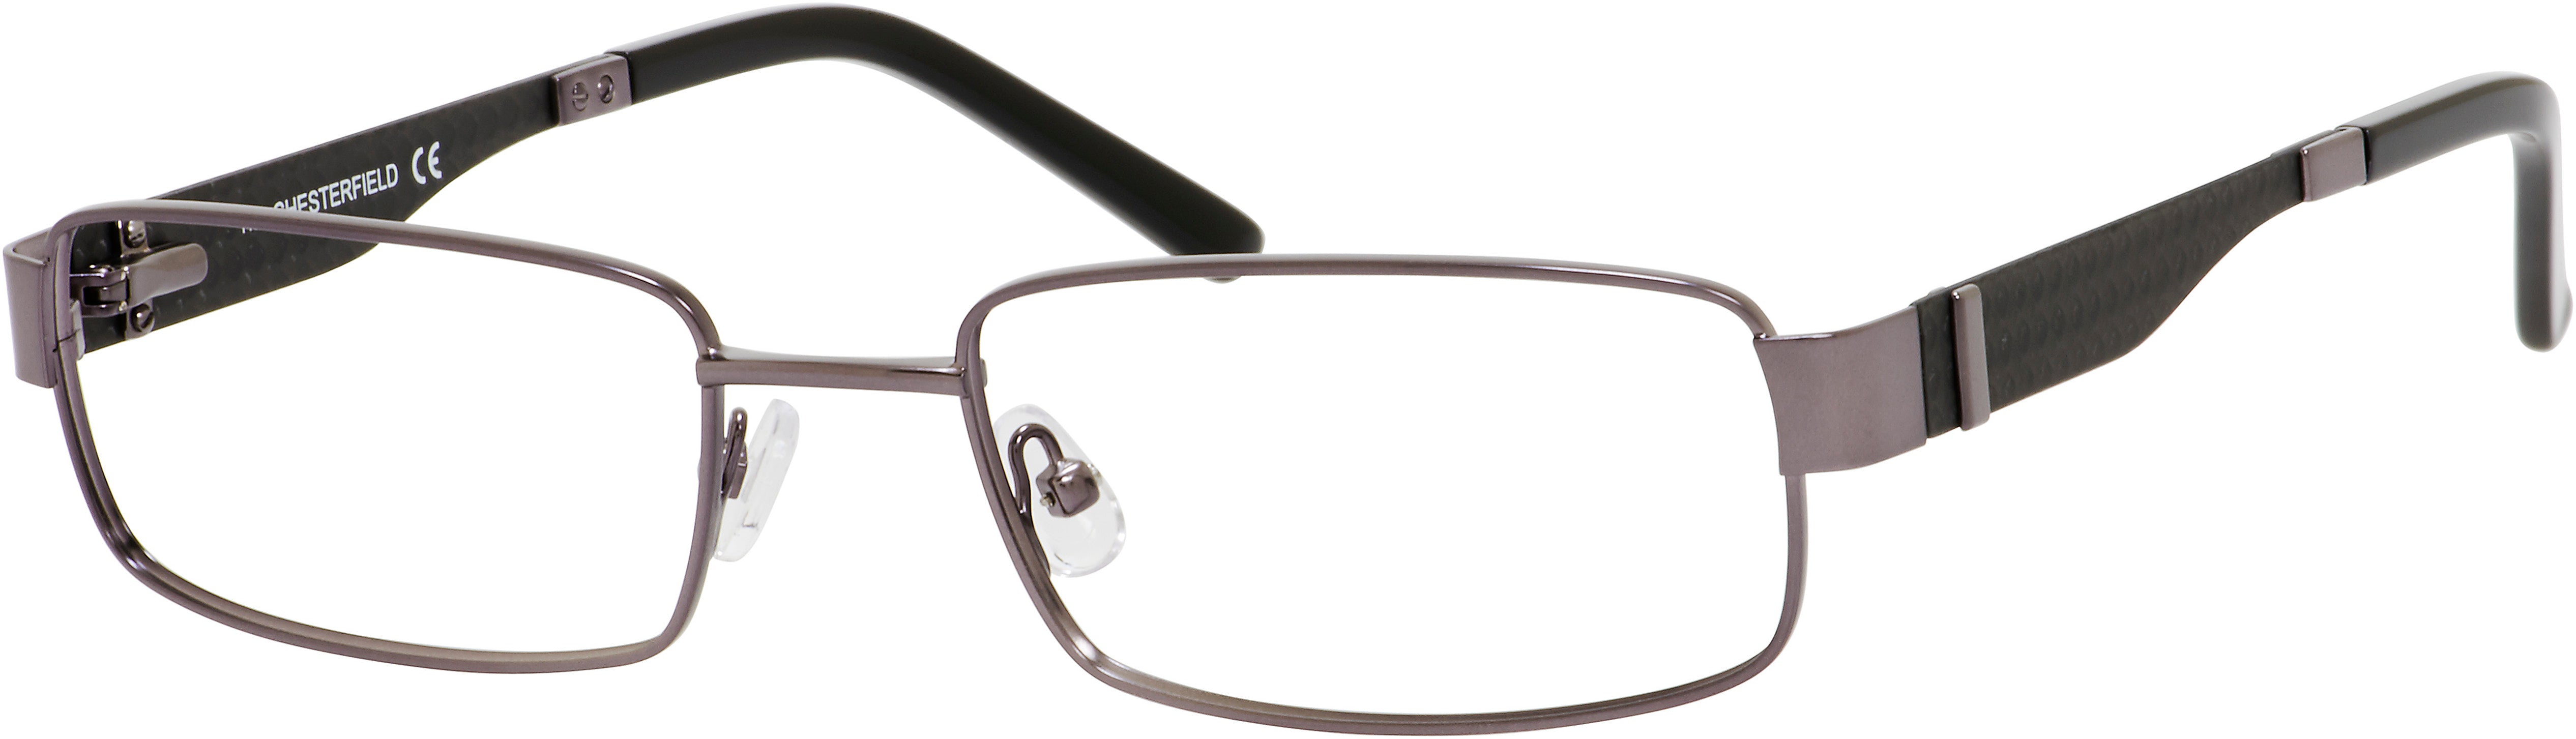  Chesterfield 20 XL Rectangular Eyeglasses 01J1-01J1  Ruthenium (00 Demo Lens)